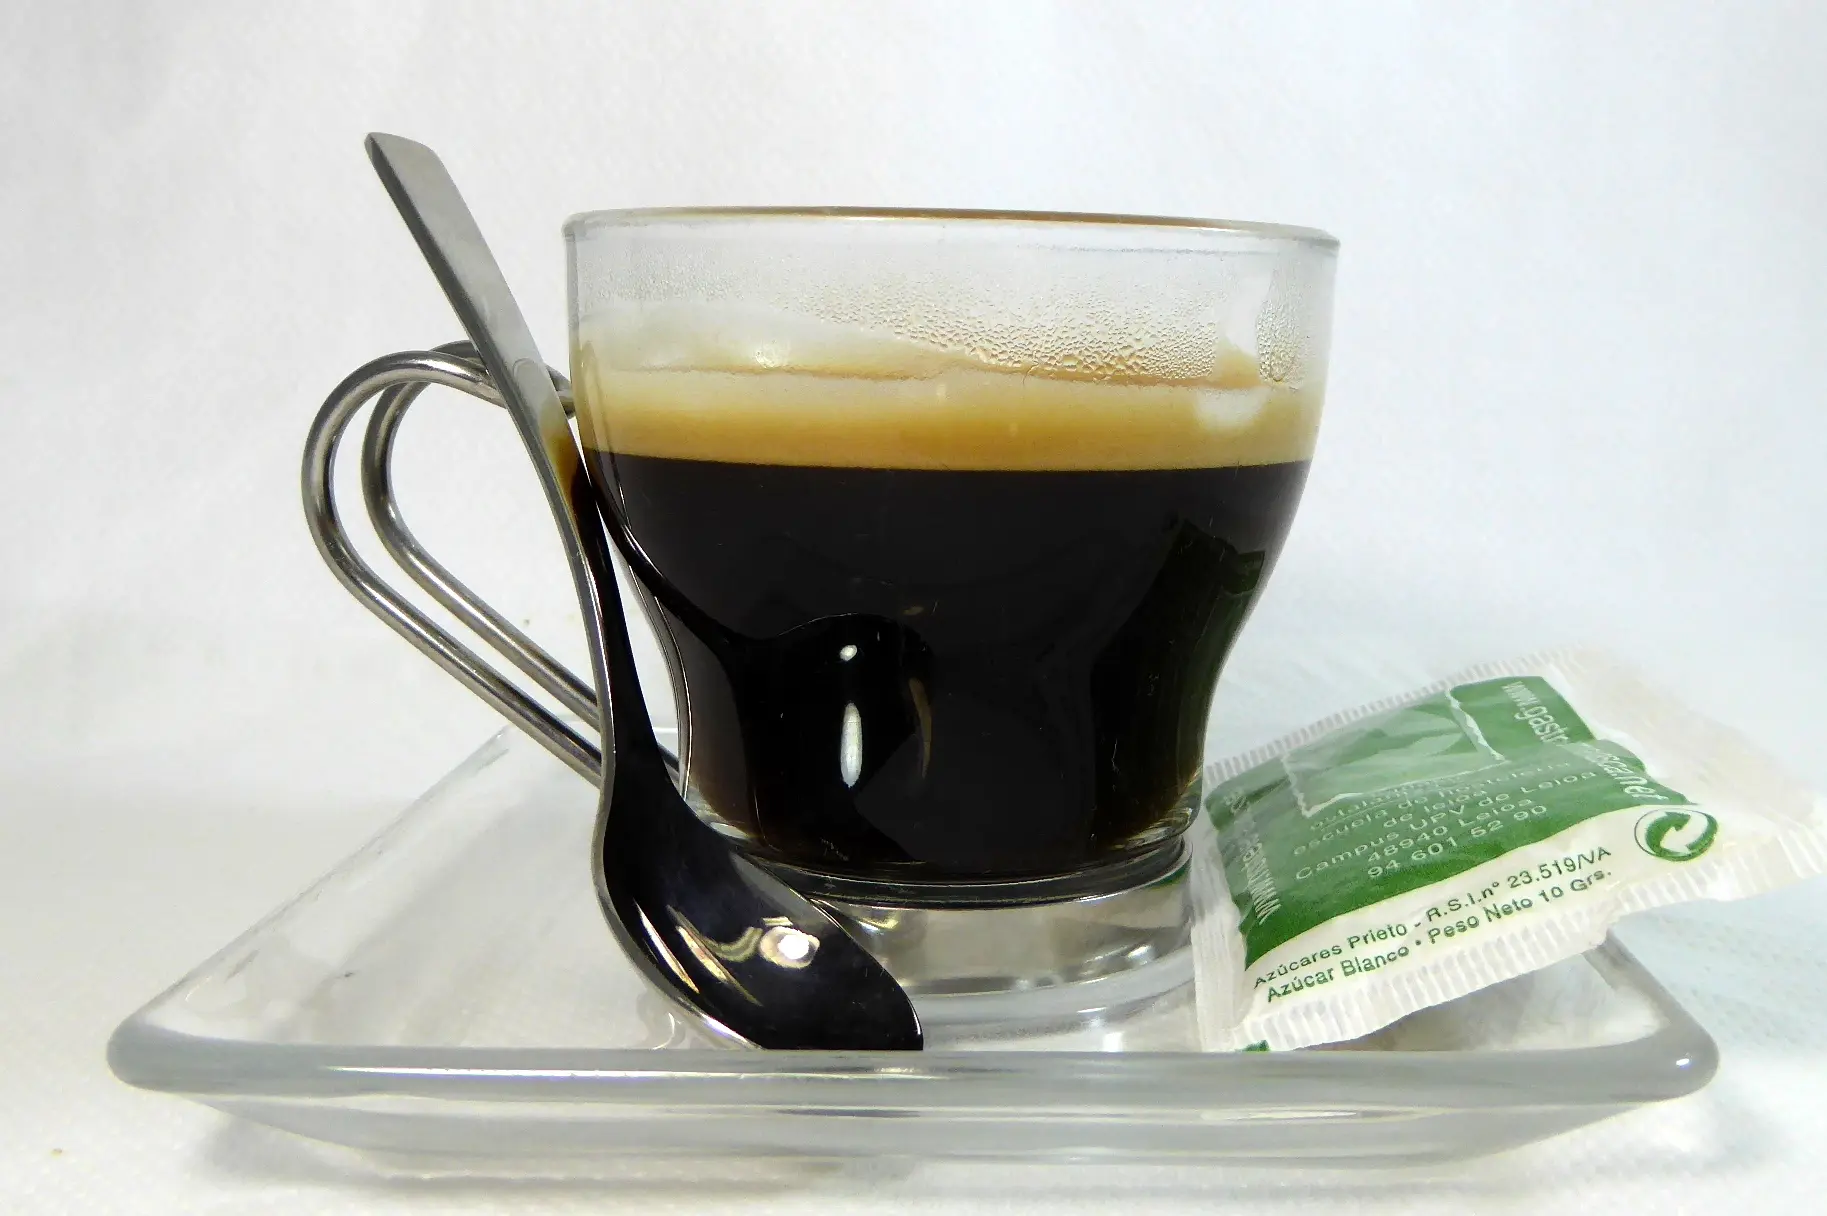 cafe solo en euskera - Cómo se dice café solo en italiano